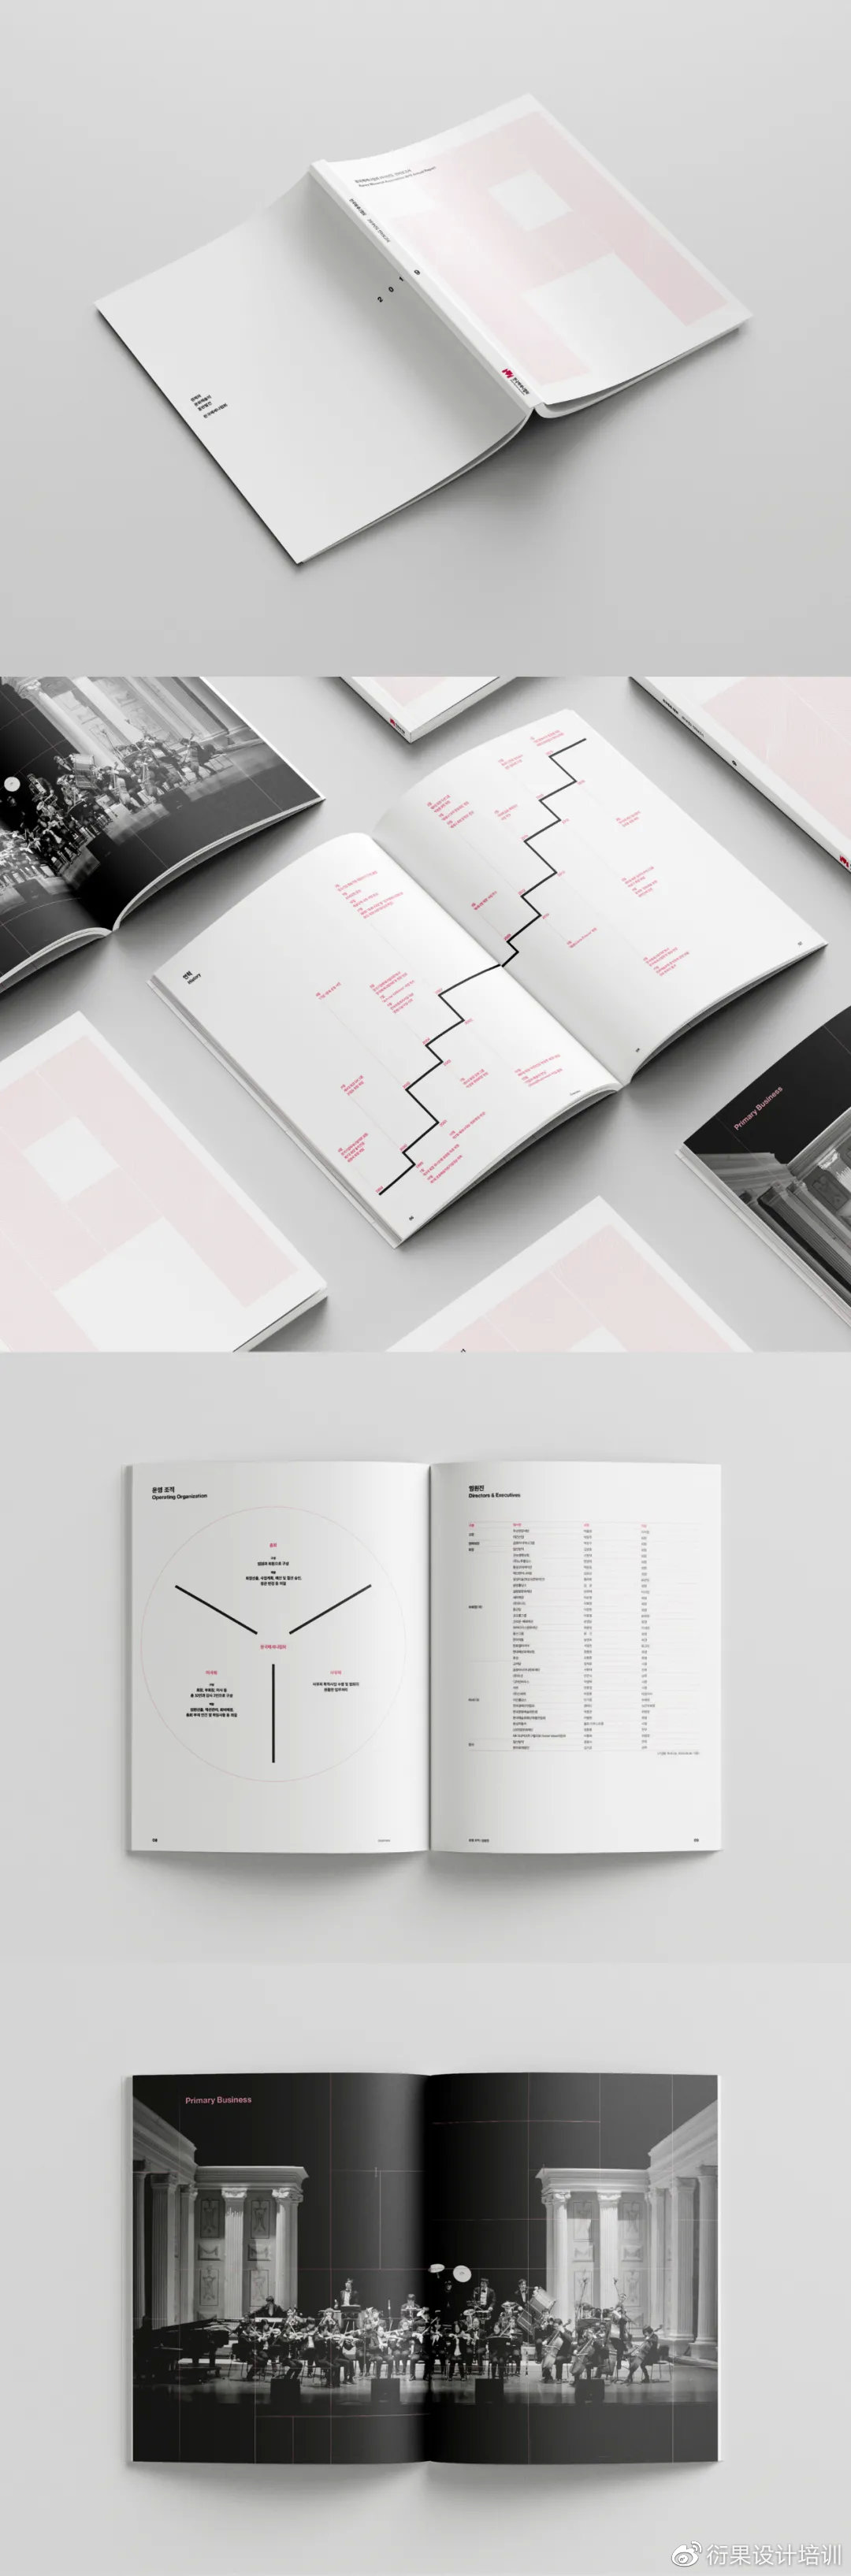 【平面设计】好看的平面设计画册哪里找